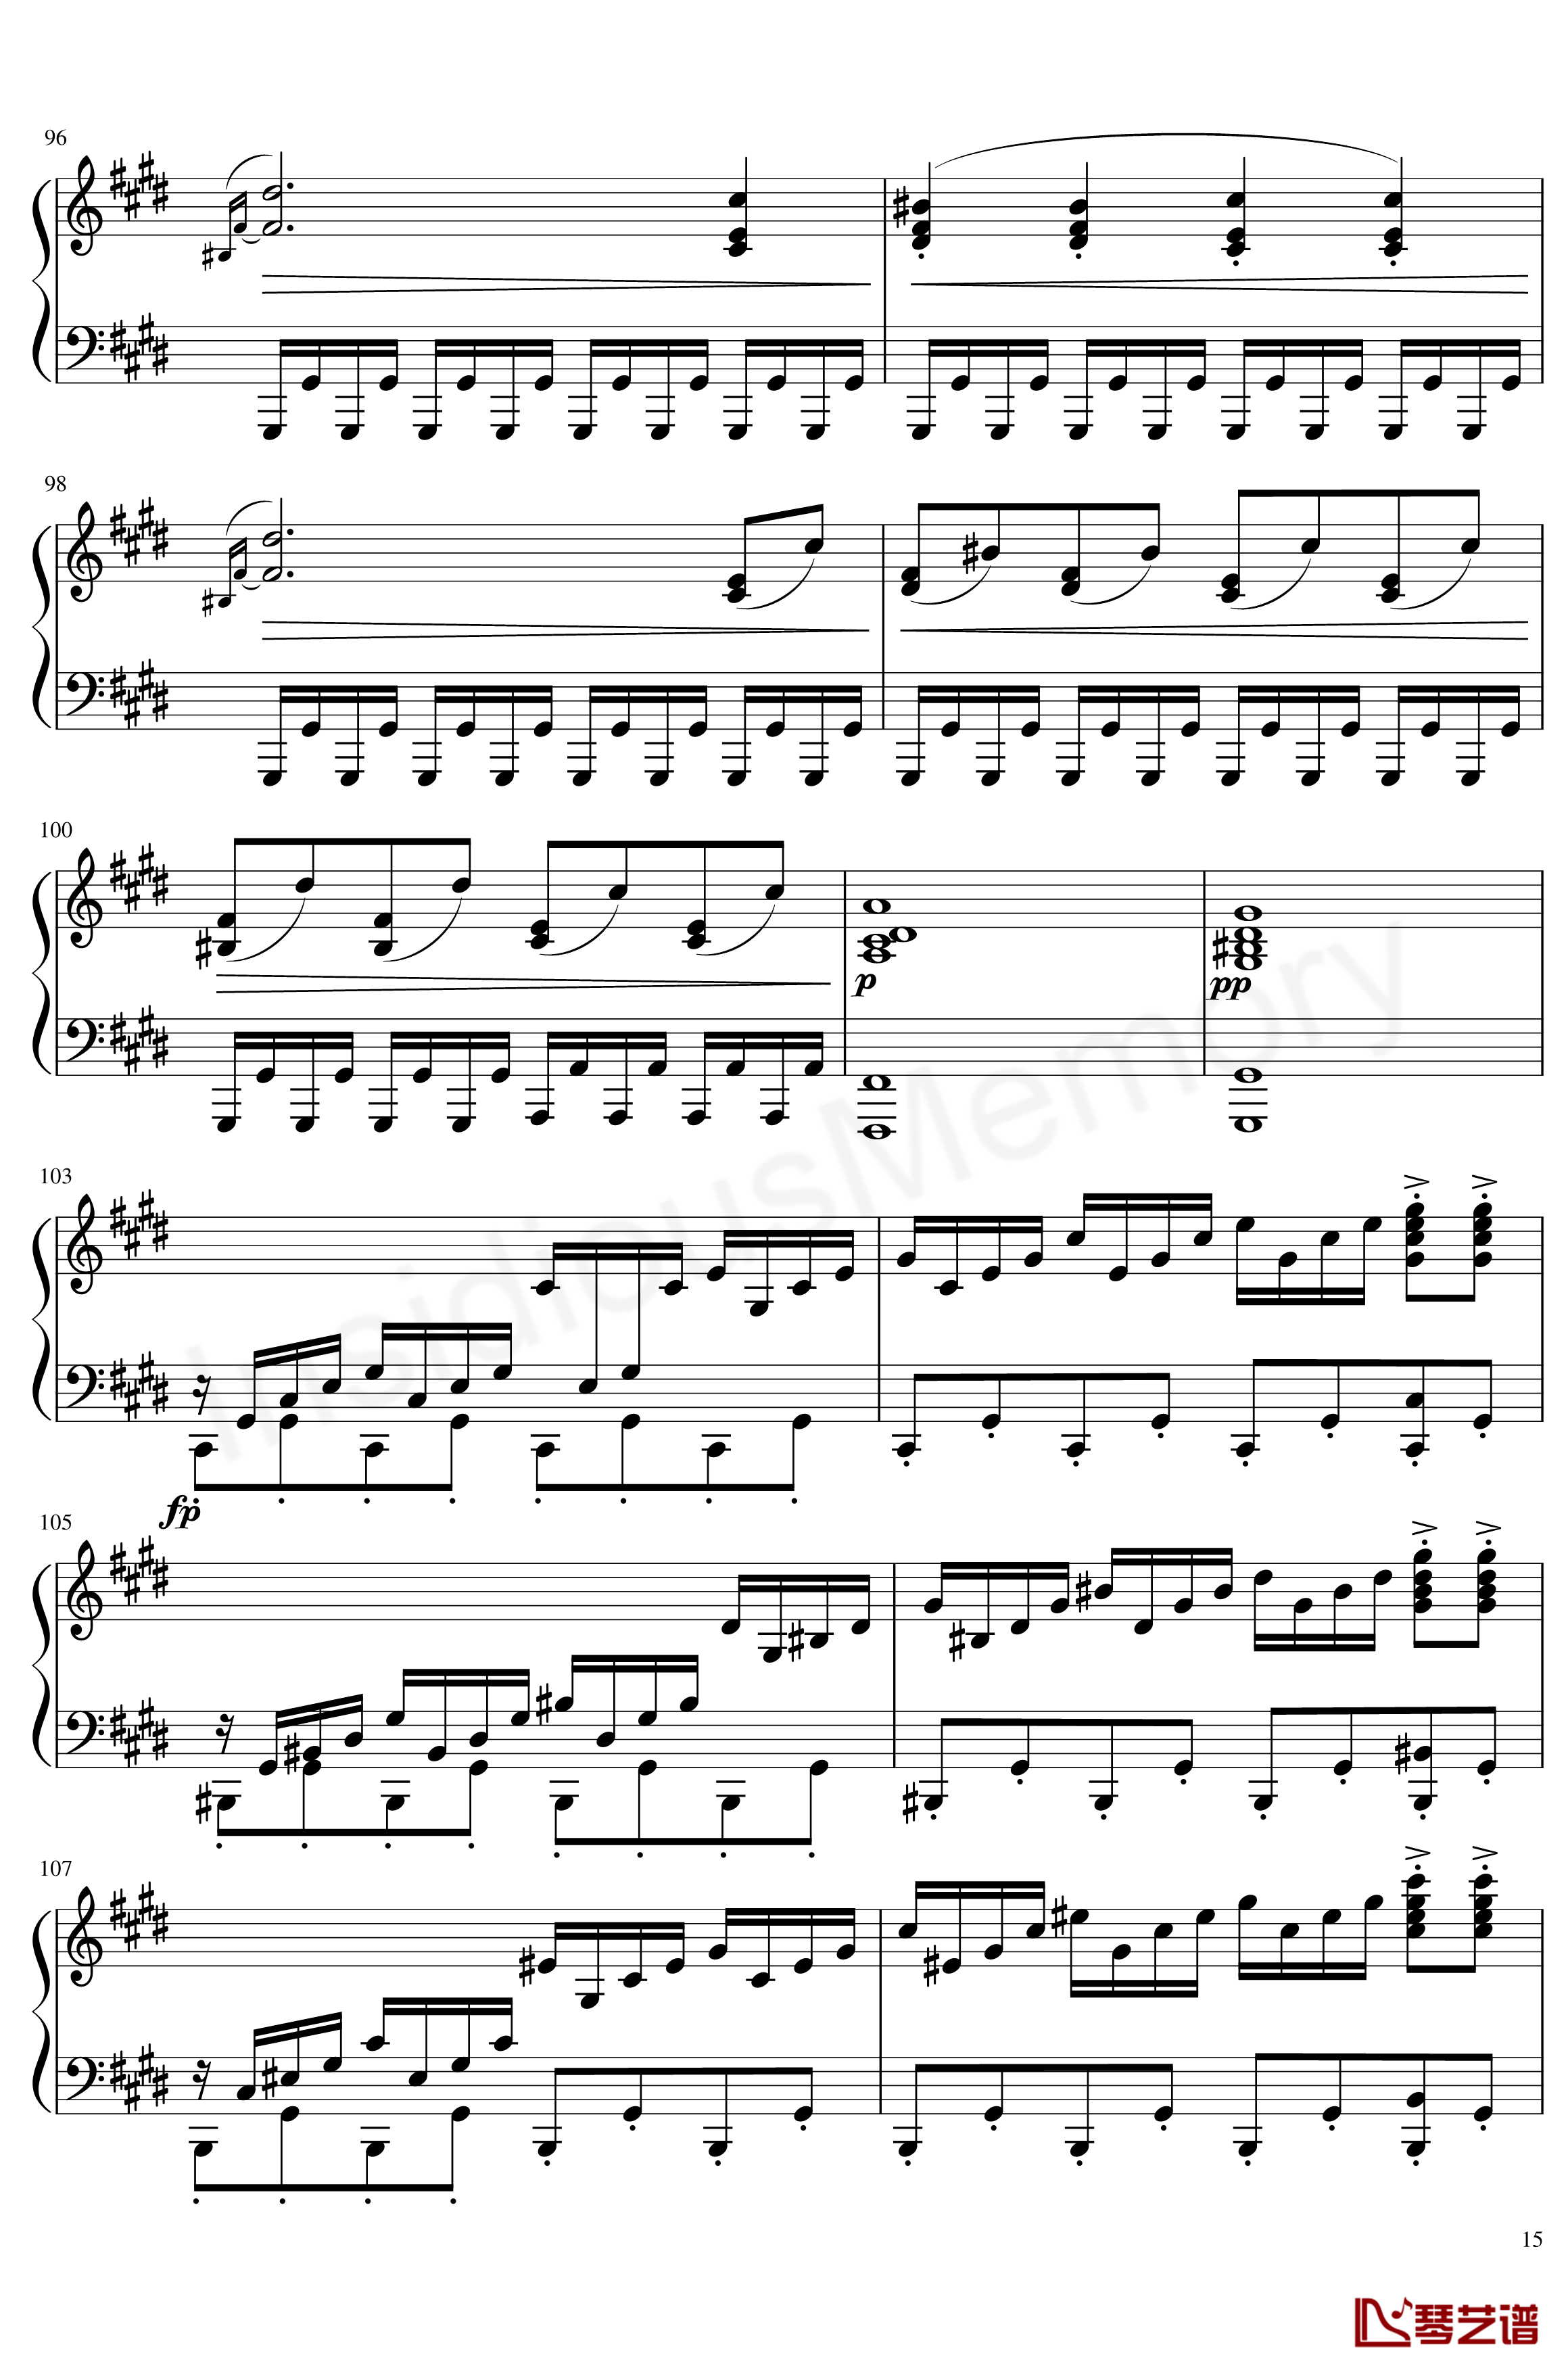 月光奏鸣曲钢琴谱-贝多芬-beethoven15